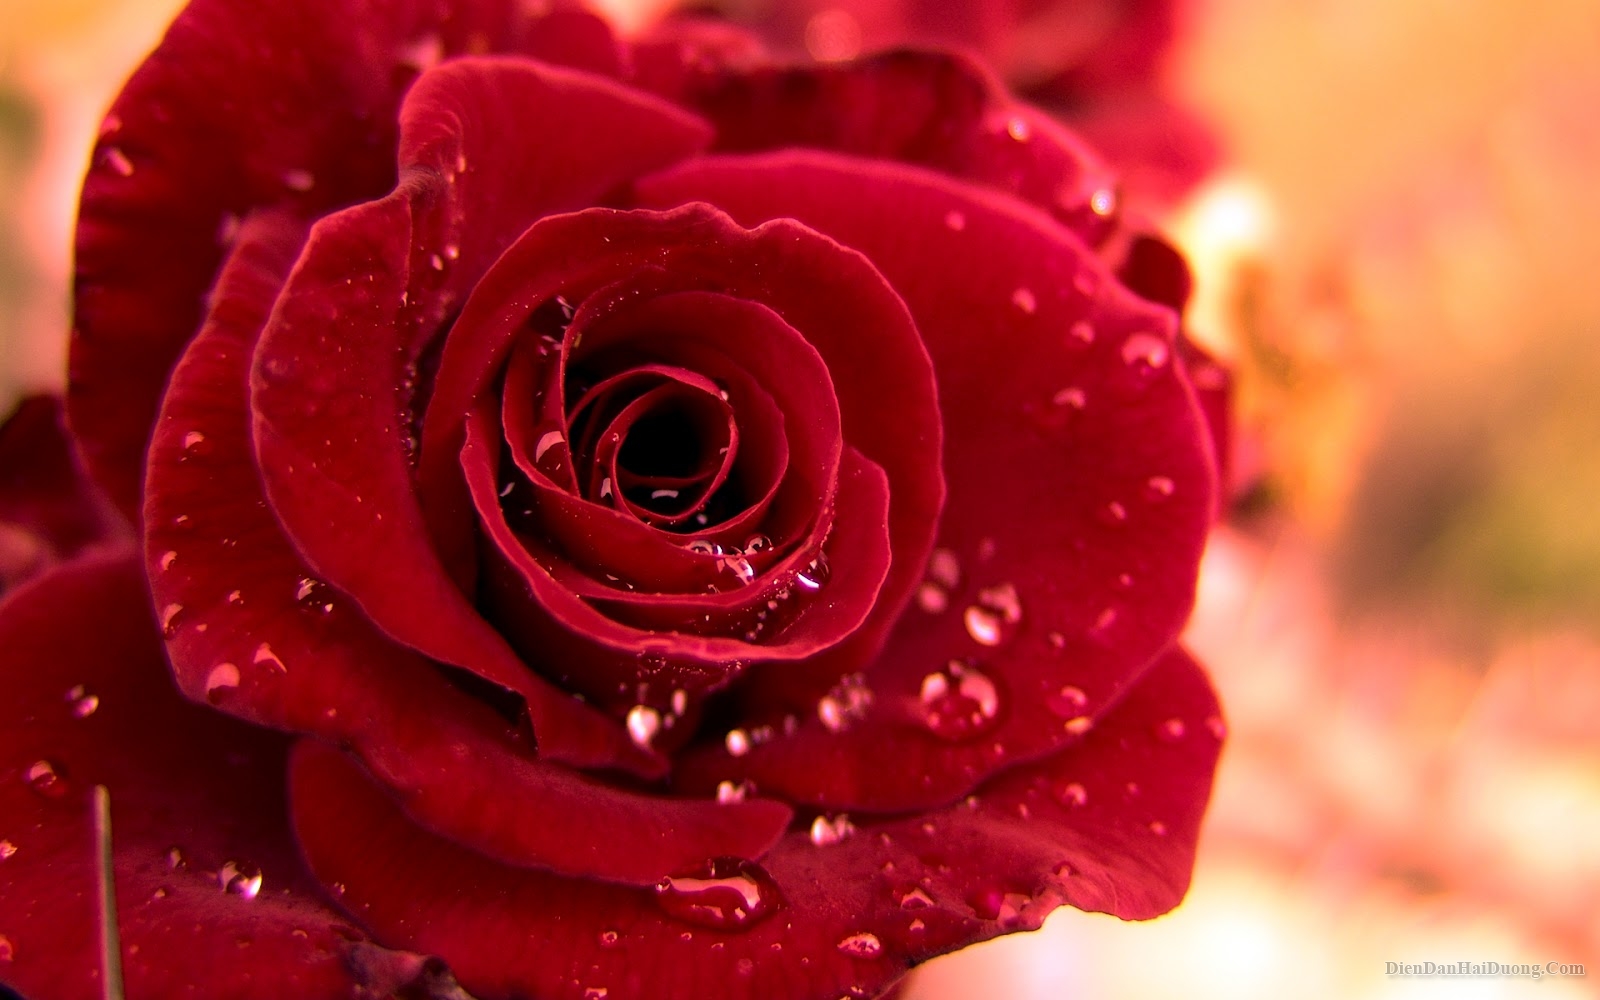 Hoa hồng đỏ là biểu tượng của tình yêu mãnh liệt, nồng cháy